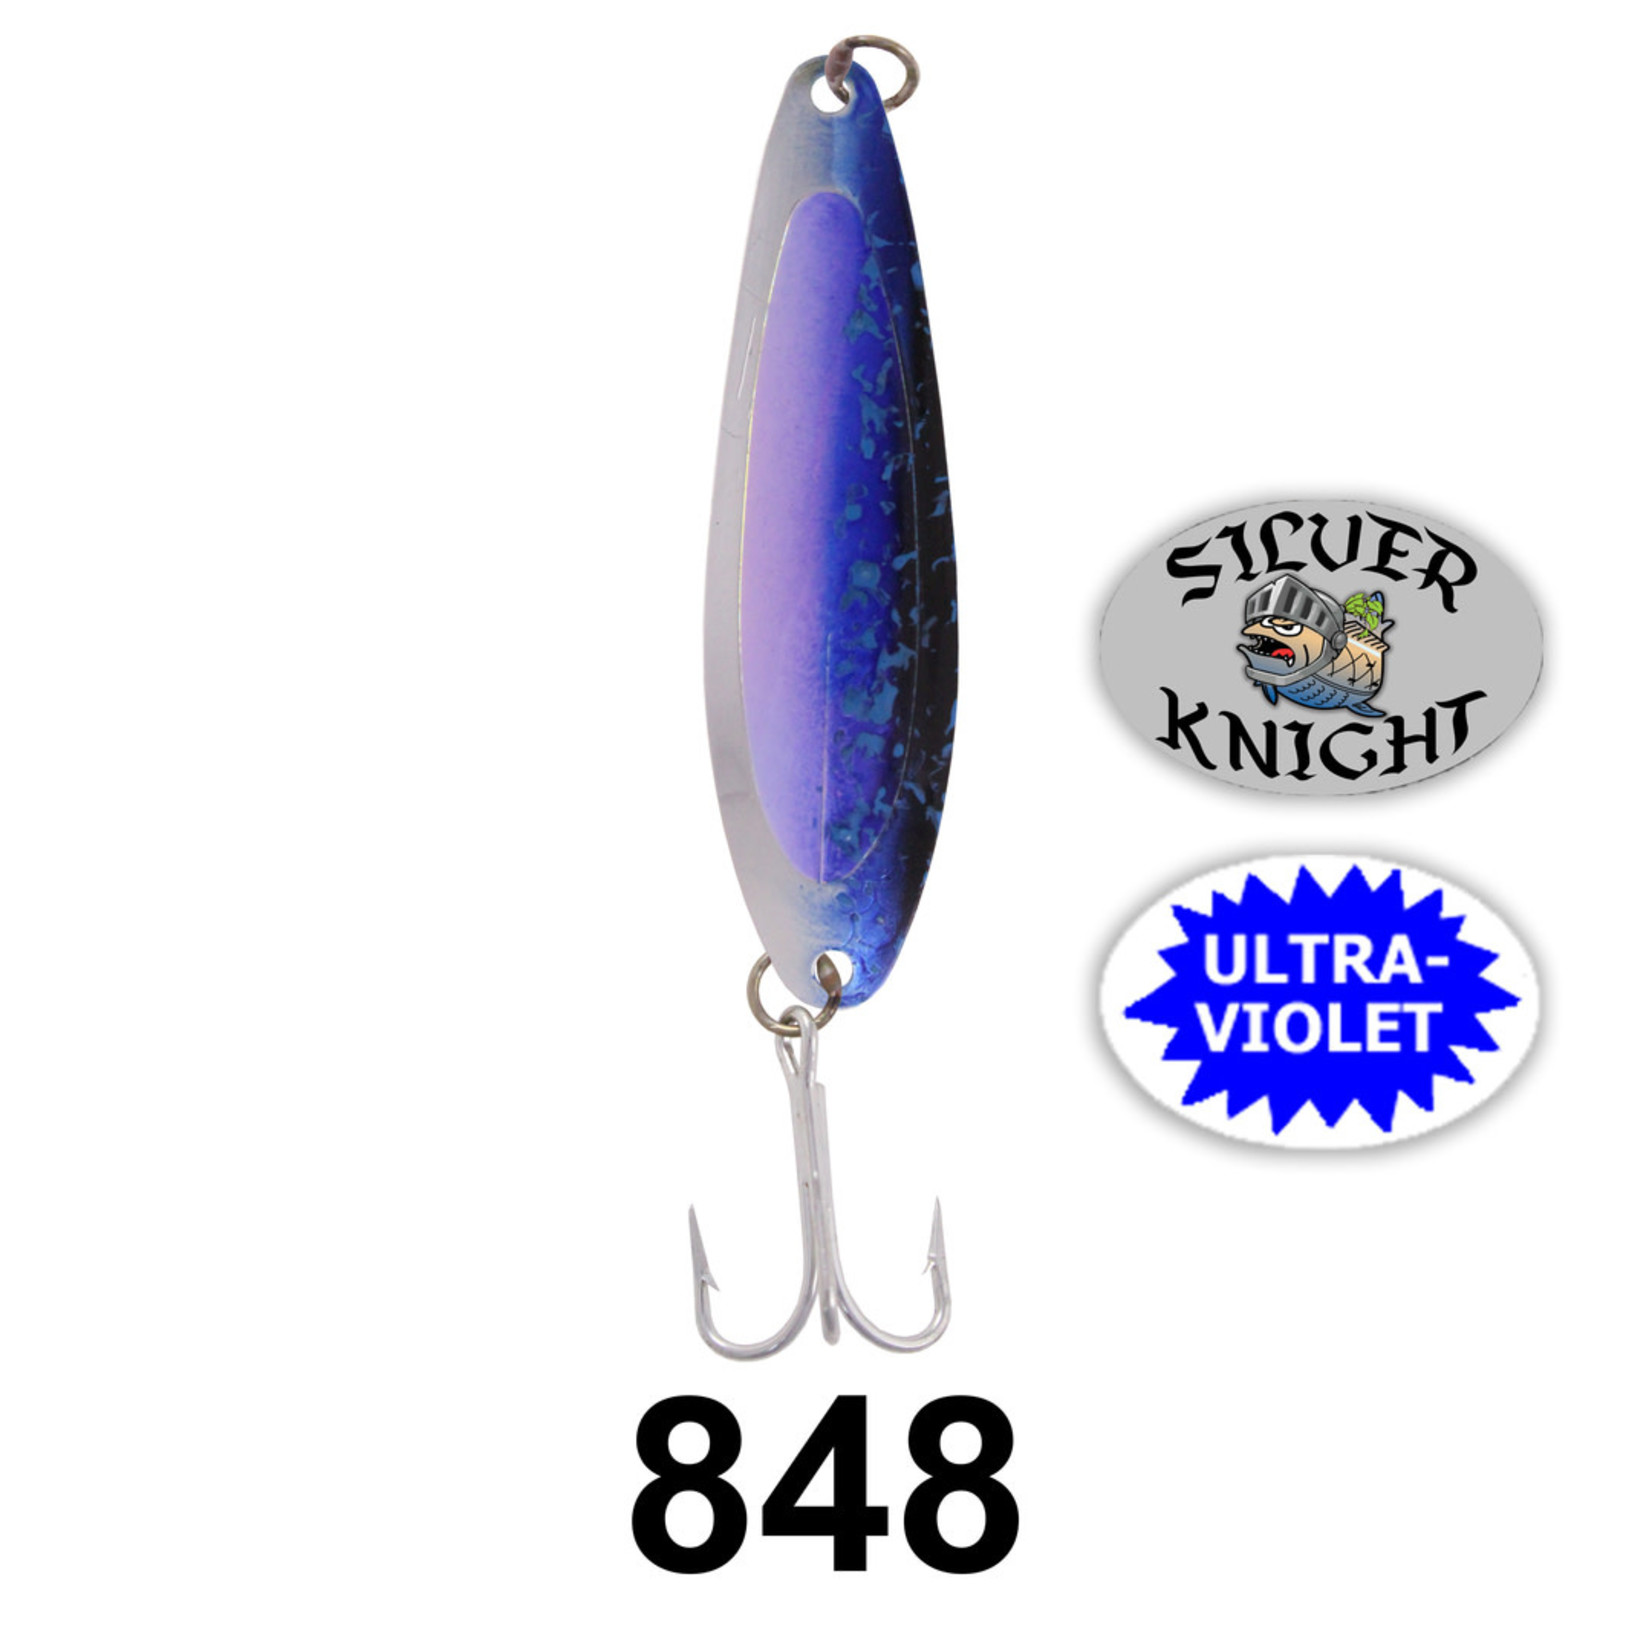 SILVER HORDE Kingfisher Lite P UV Blue Splatter 848 4143